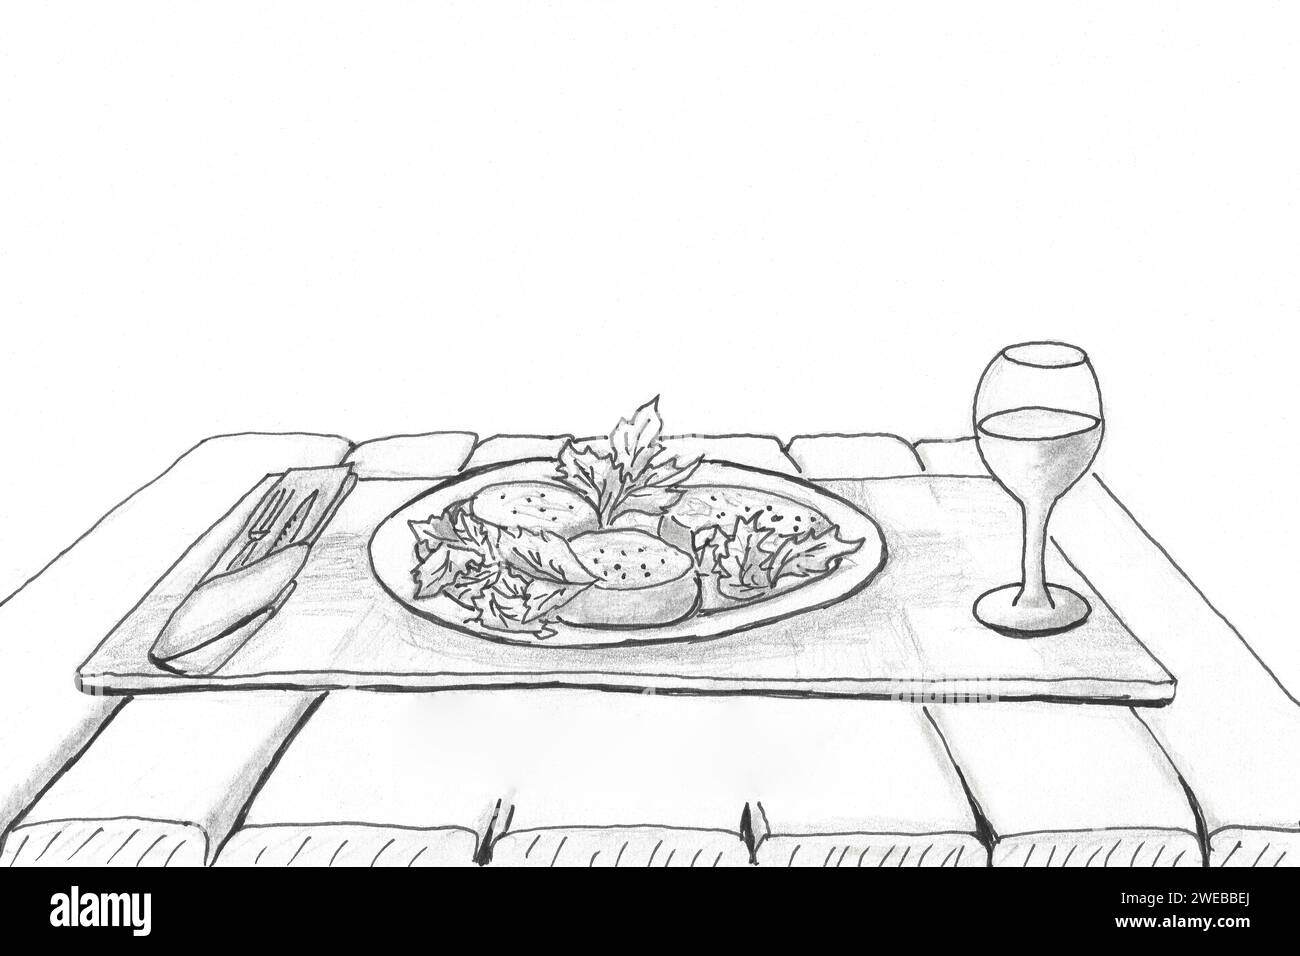 Abstrakte primitive Zeichnung von Lebensmittelkäse und Rukola-Rucola. kugelschreiberskizze. Vereinfachte Zeichnung für die Praxis, die Skizzen in bal veranschaulicht Stockfoto